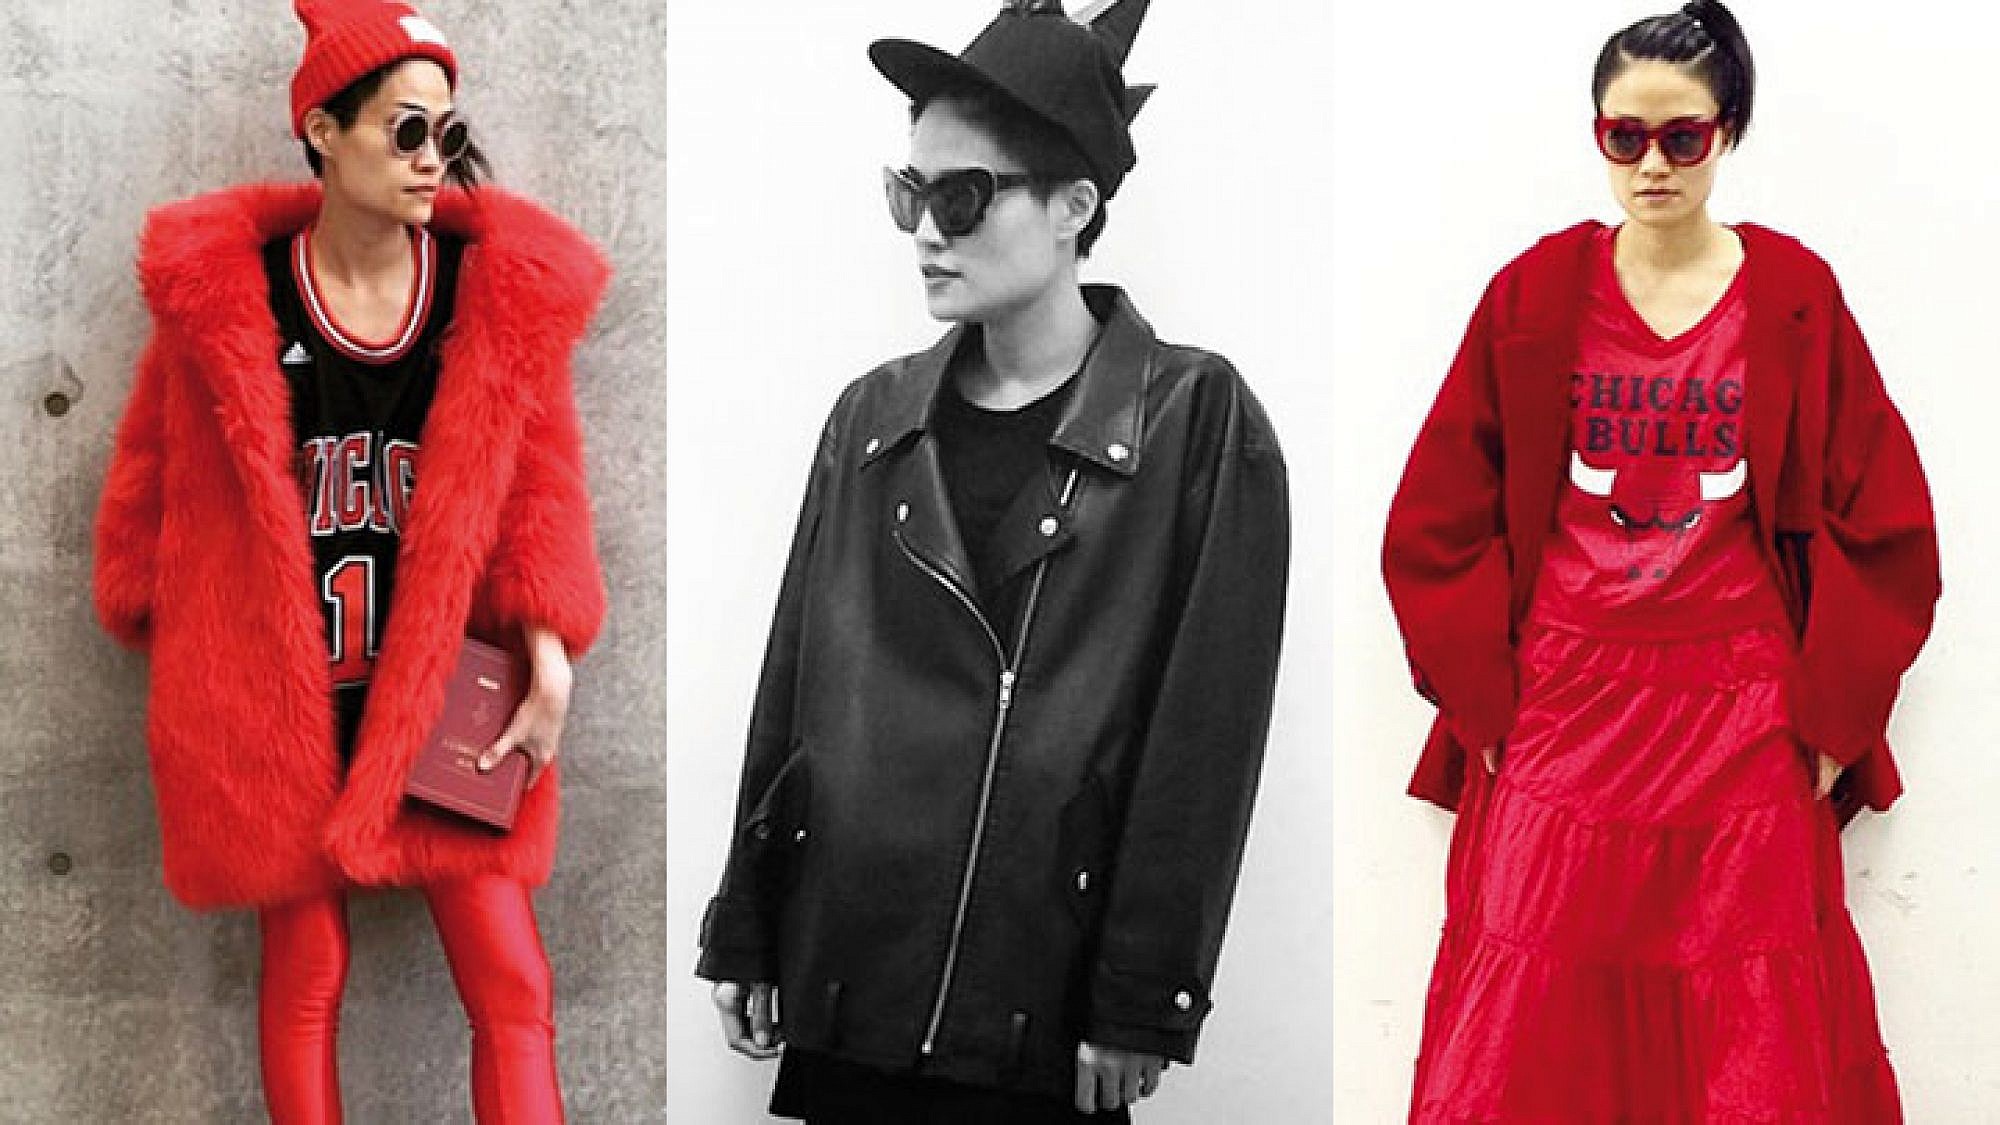 פיד האינסטגרם הנועז של katyeung215@ מזכיר שאופנה היא ה־כלי לביטוי אישי | צילום מתוך האינסטגרם של katyeung215@